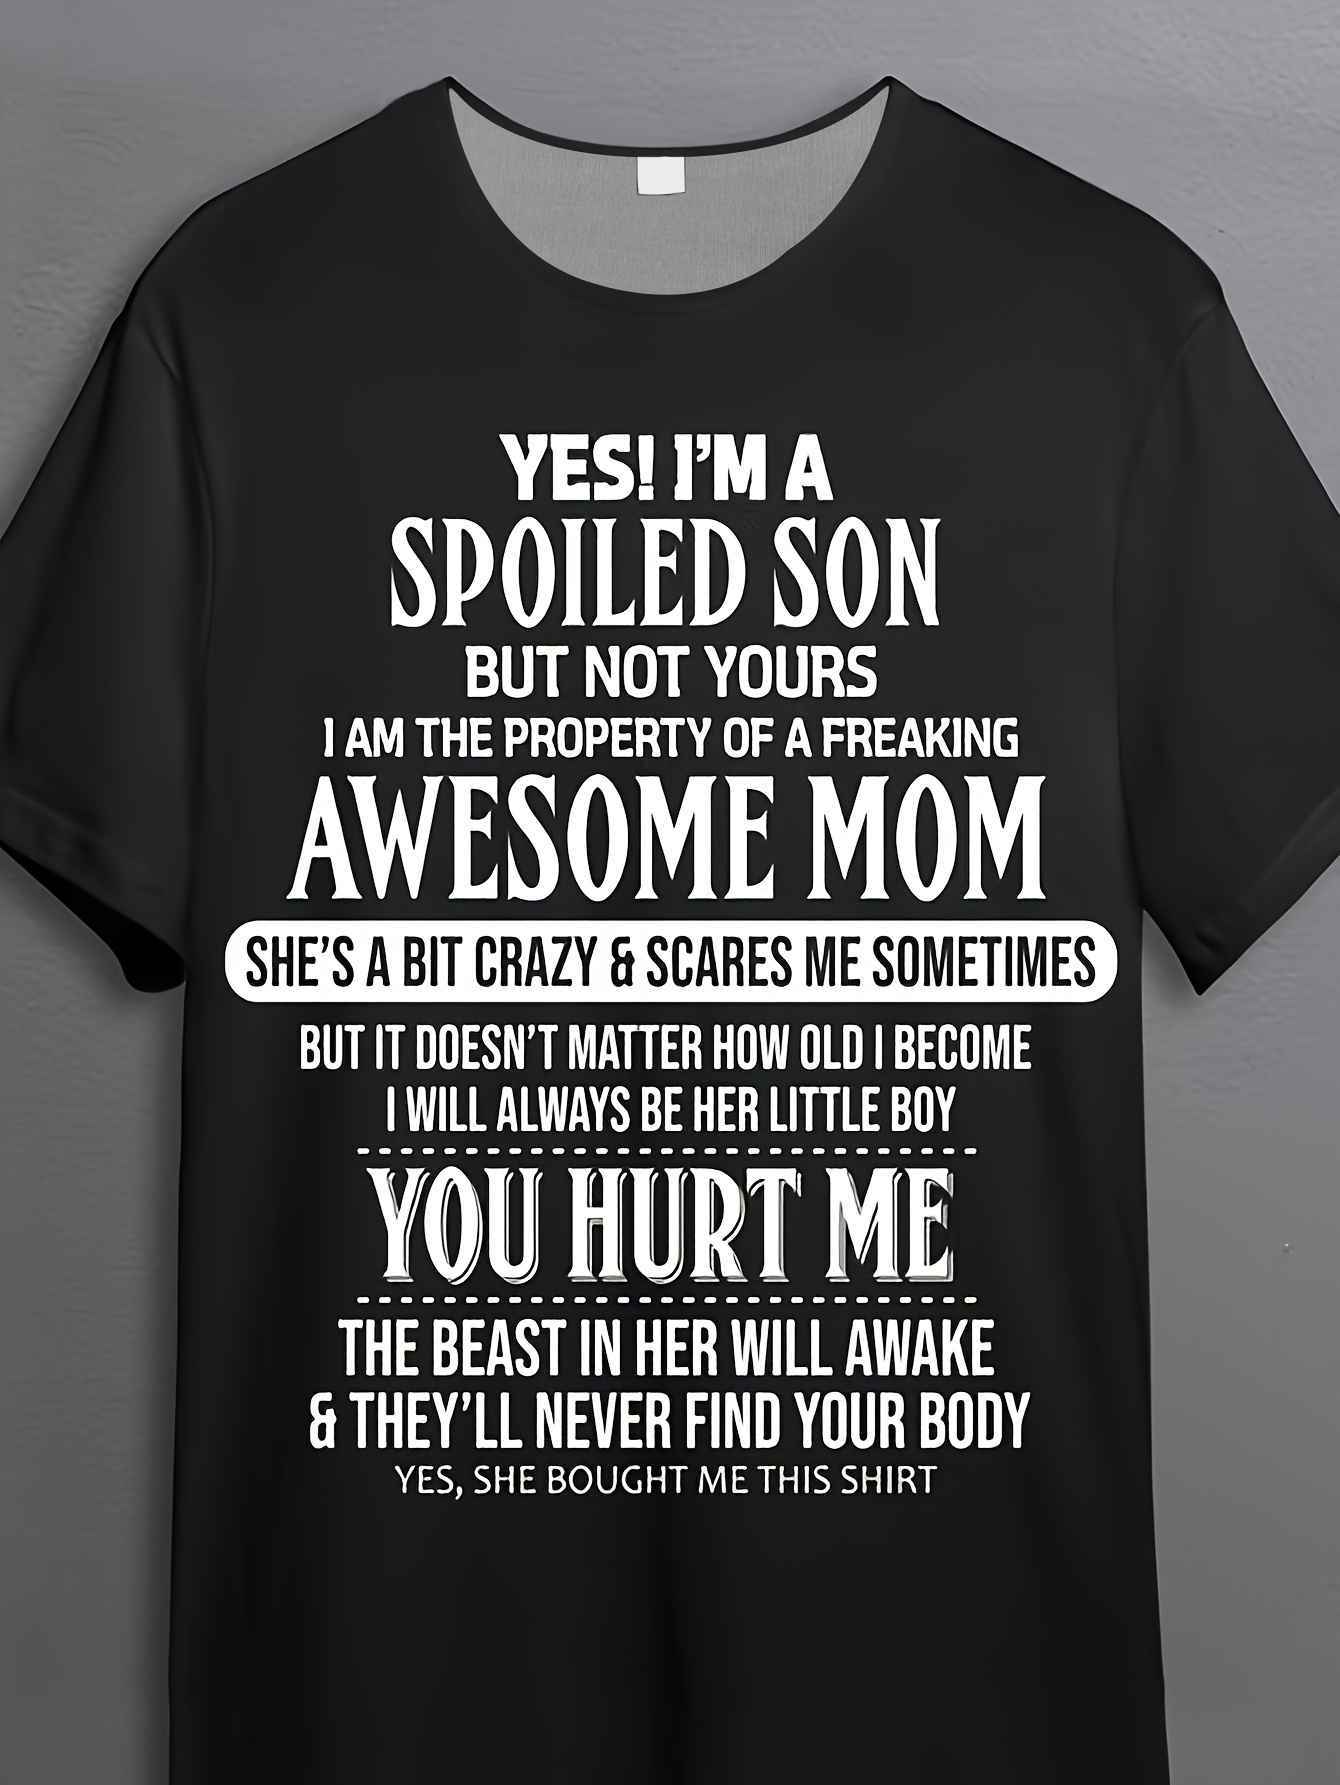 Diseño de camisetas gym, camisetas gráficas de gimnasia para hombres, mom  gym, ropa de gimnasia y fitness.